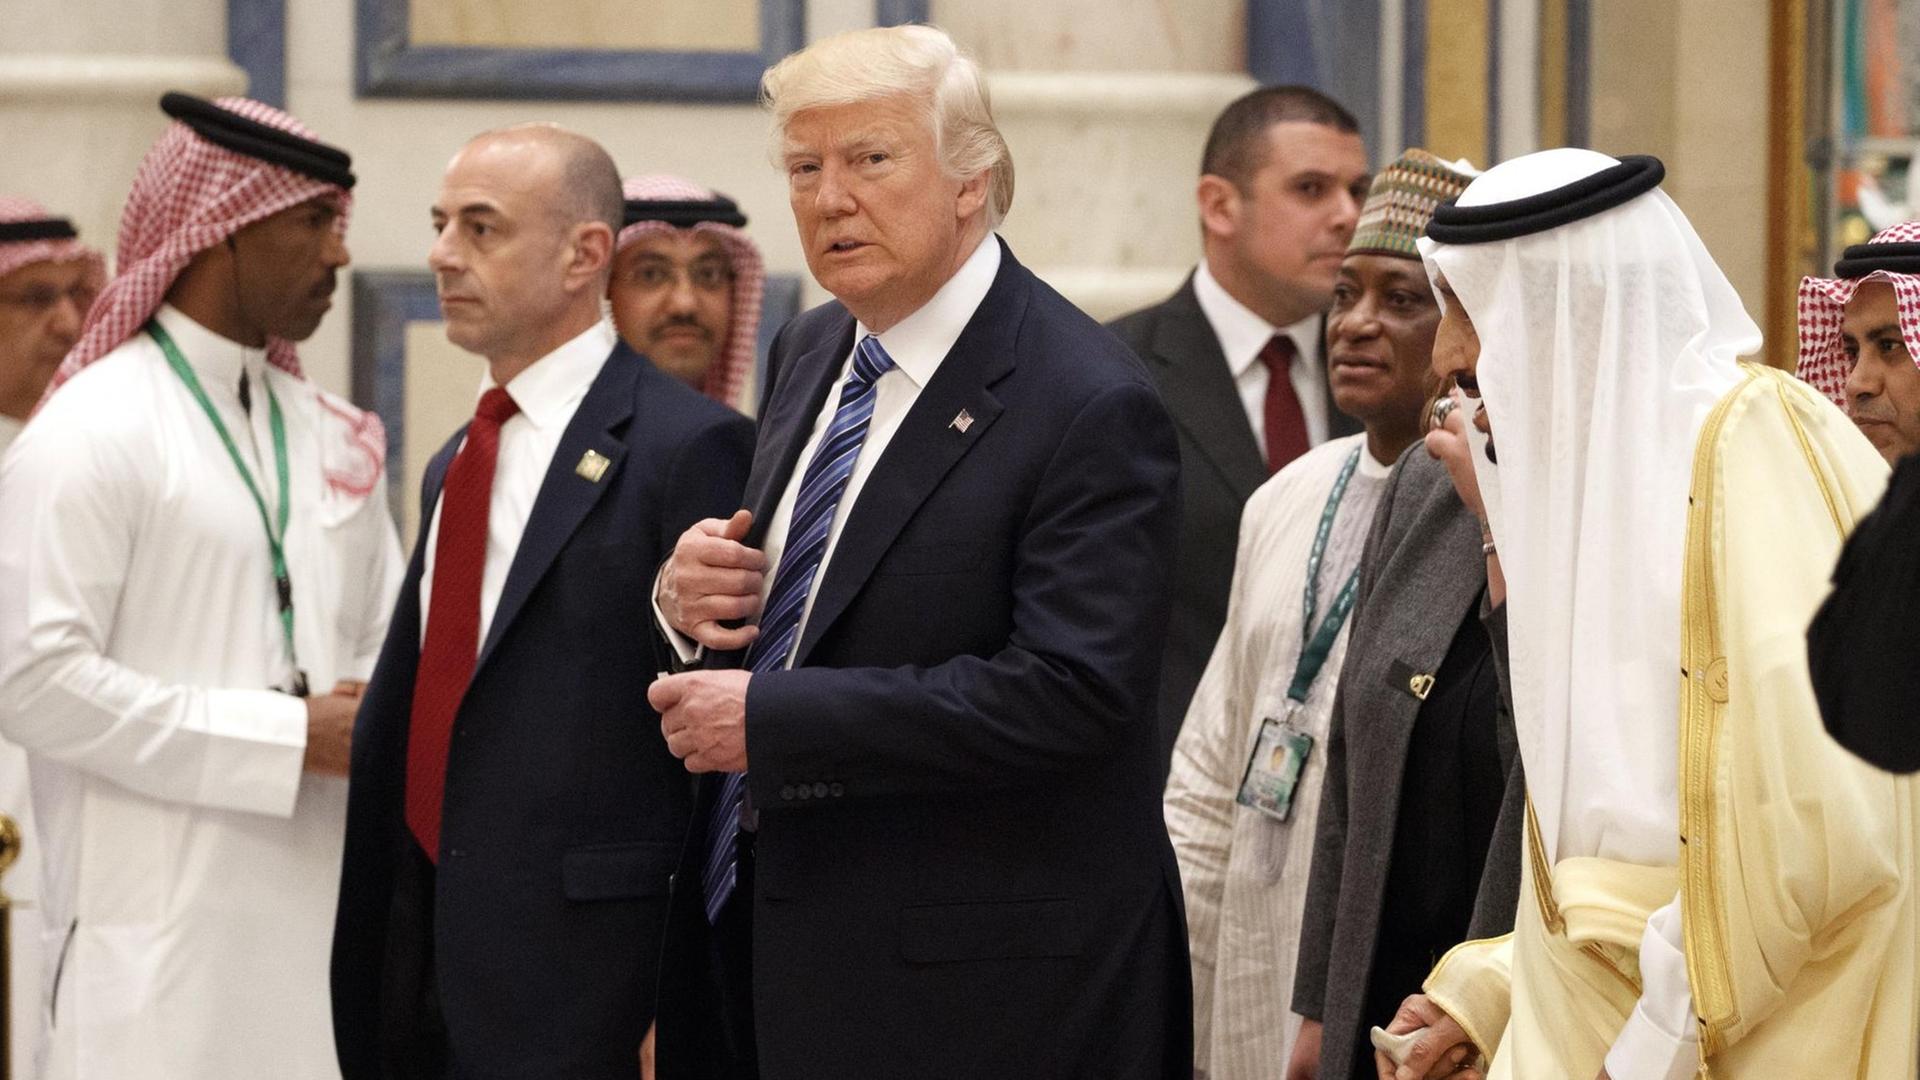 US-Präsident Trump geht neben dem saudischen König Salman zum Gipfeltreffen in Riad